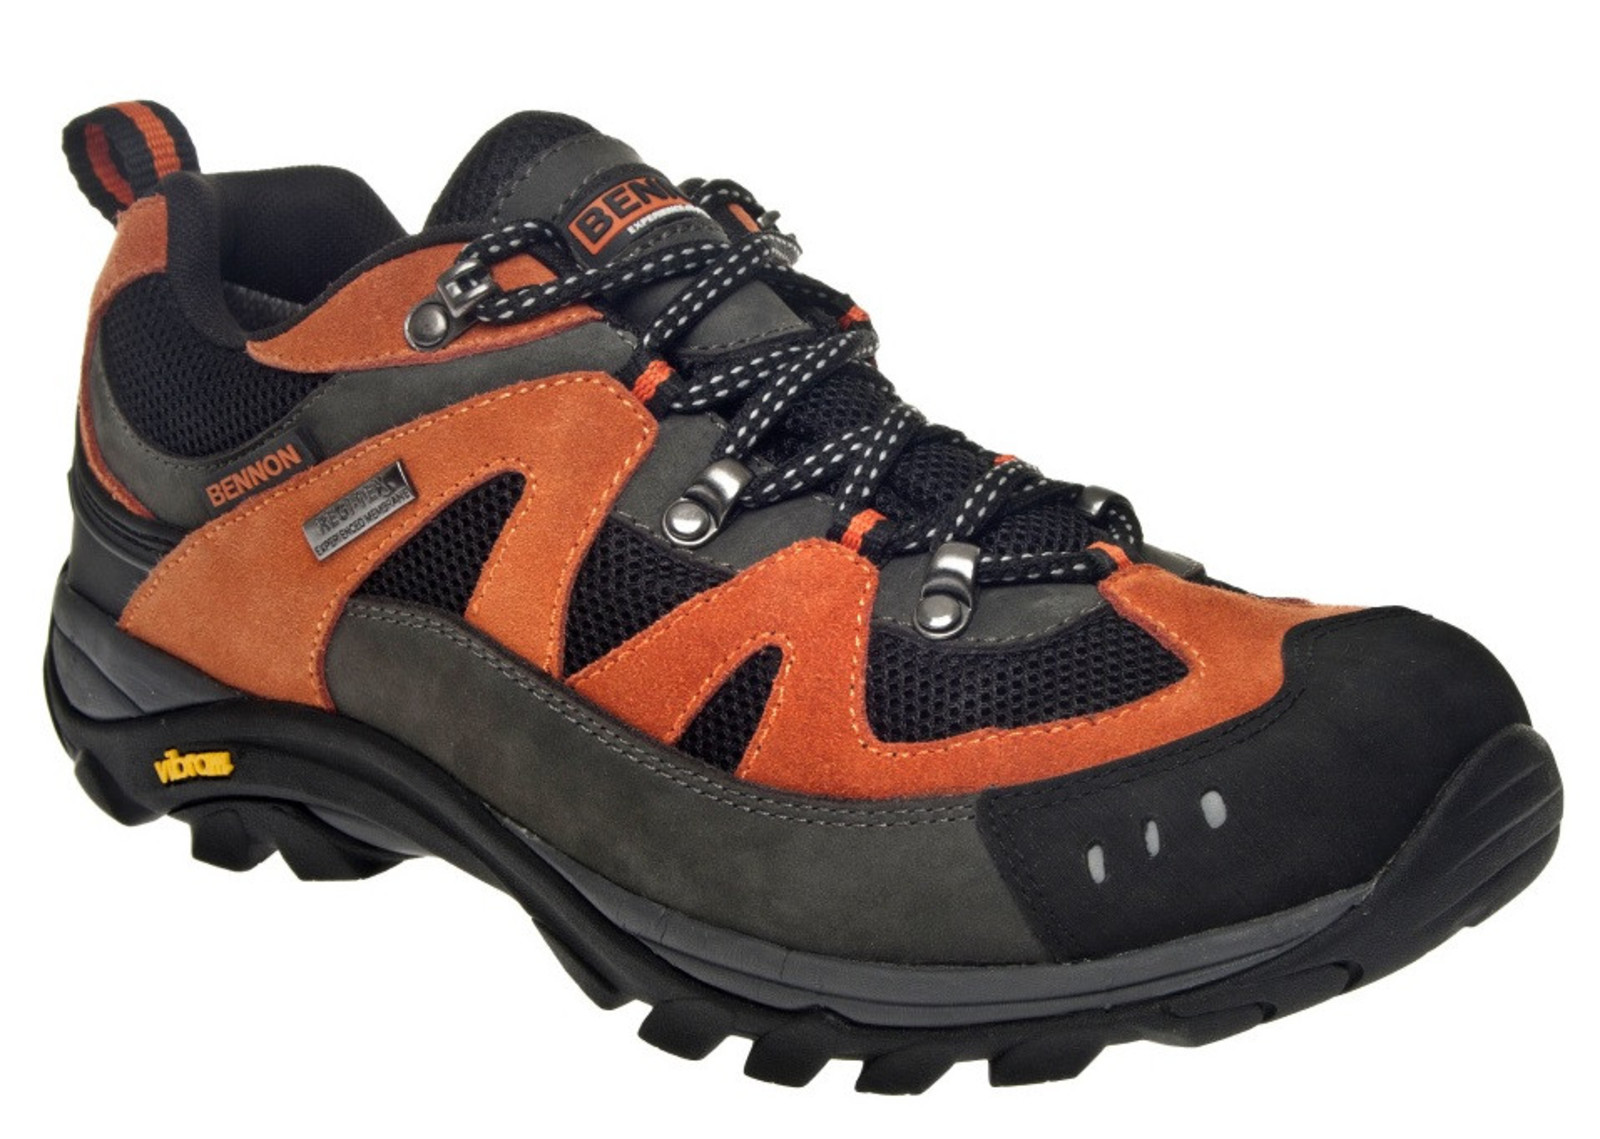 Outdoorové topánky Bennon Emperado s membránou - veľkosť: 45, farba: sivá/oranžová